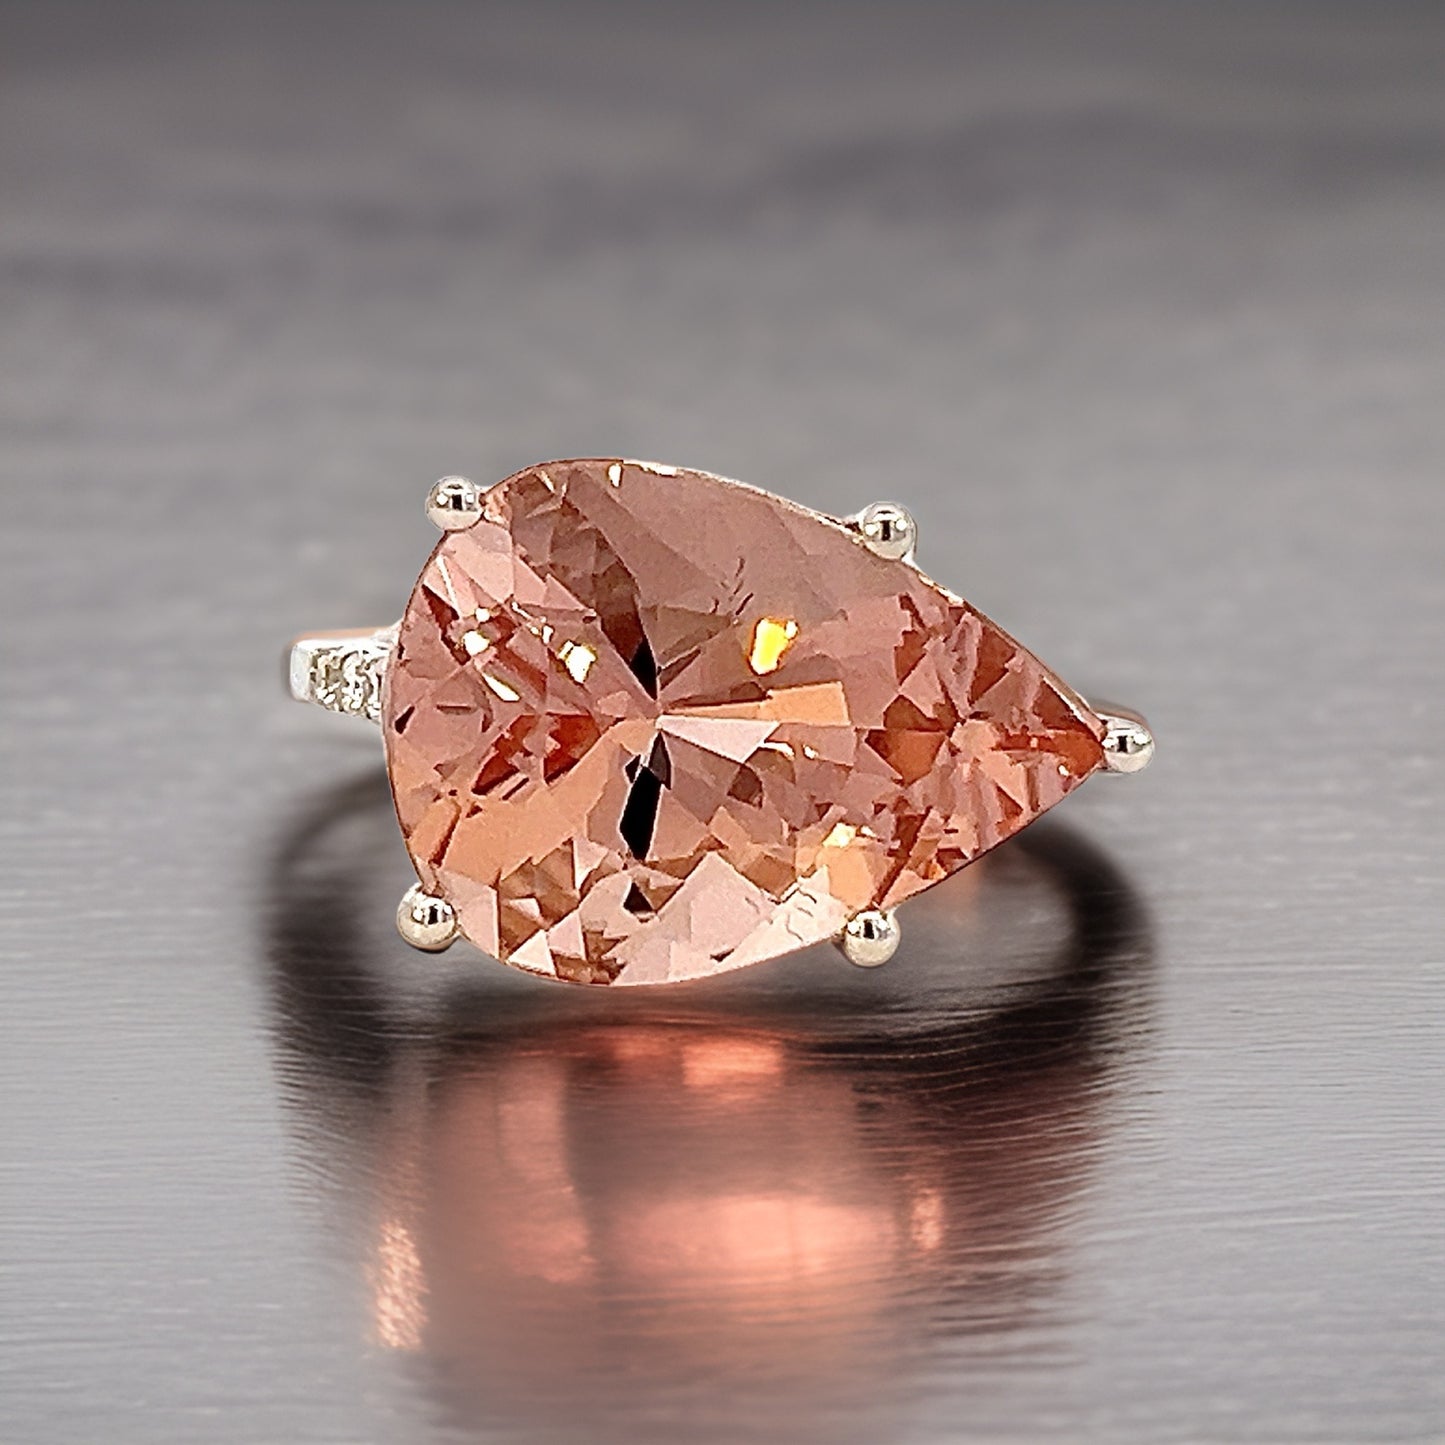 Natural Morganite Diamond Ring 6.5 14k White Gold 8.99 TCW Certified $5,950 310650